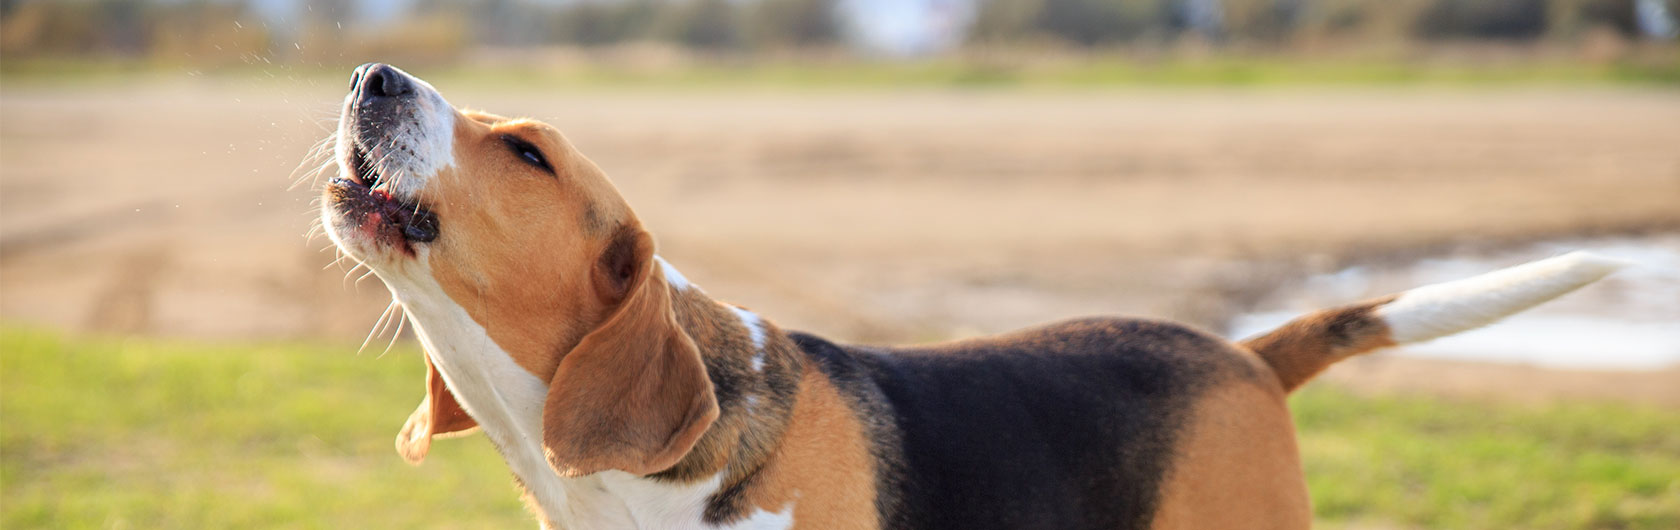 Ladridos de perros, algunos datos importantes y alimento para perros de calidad nutribon